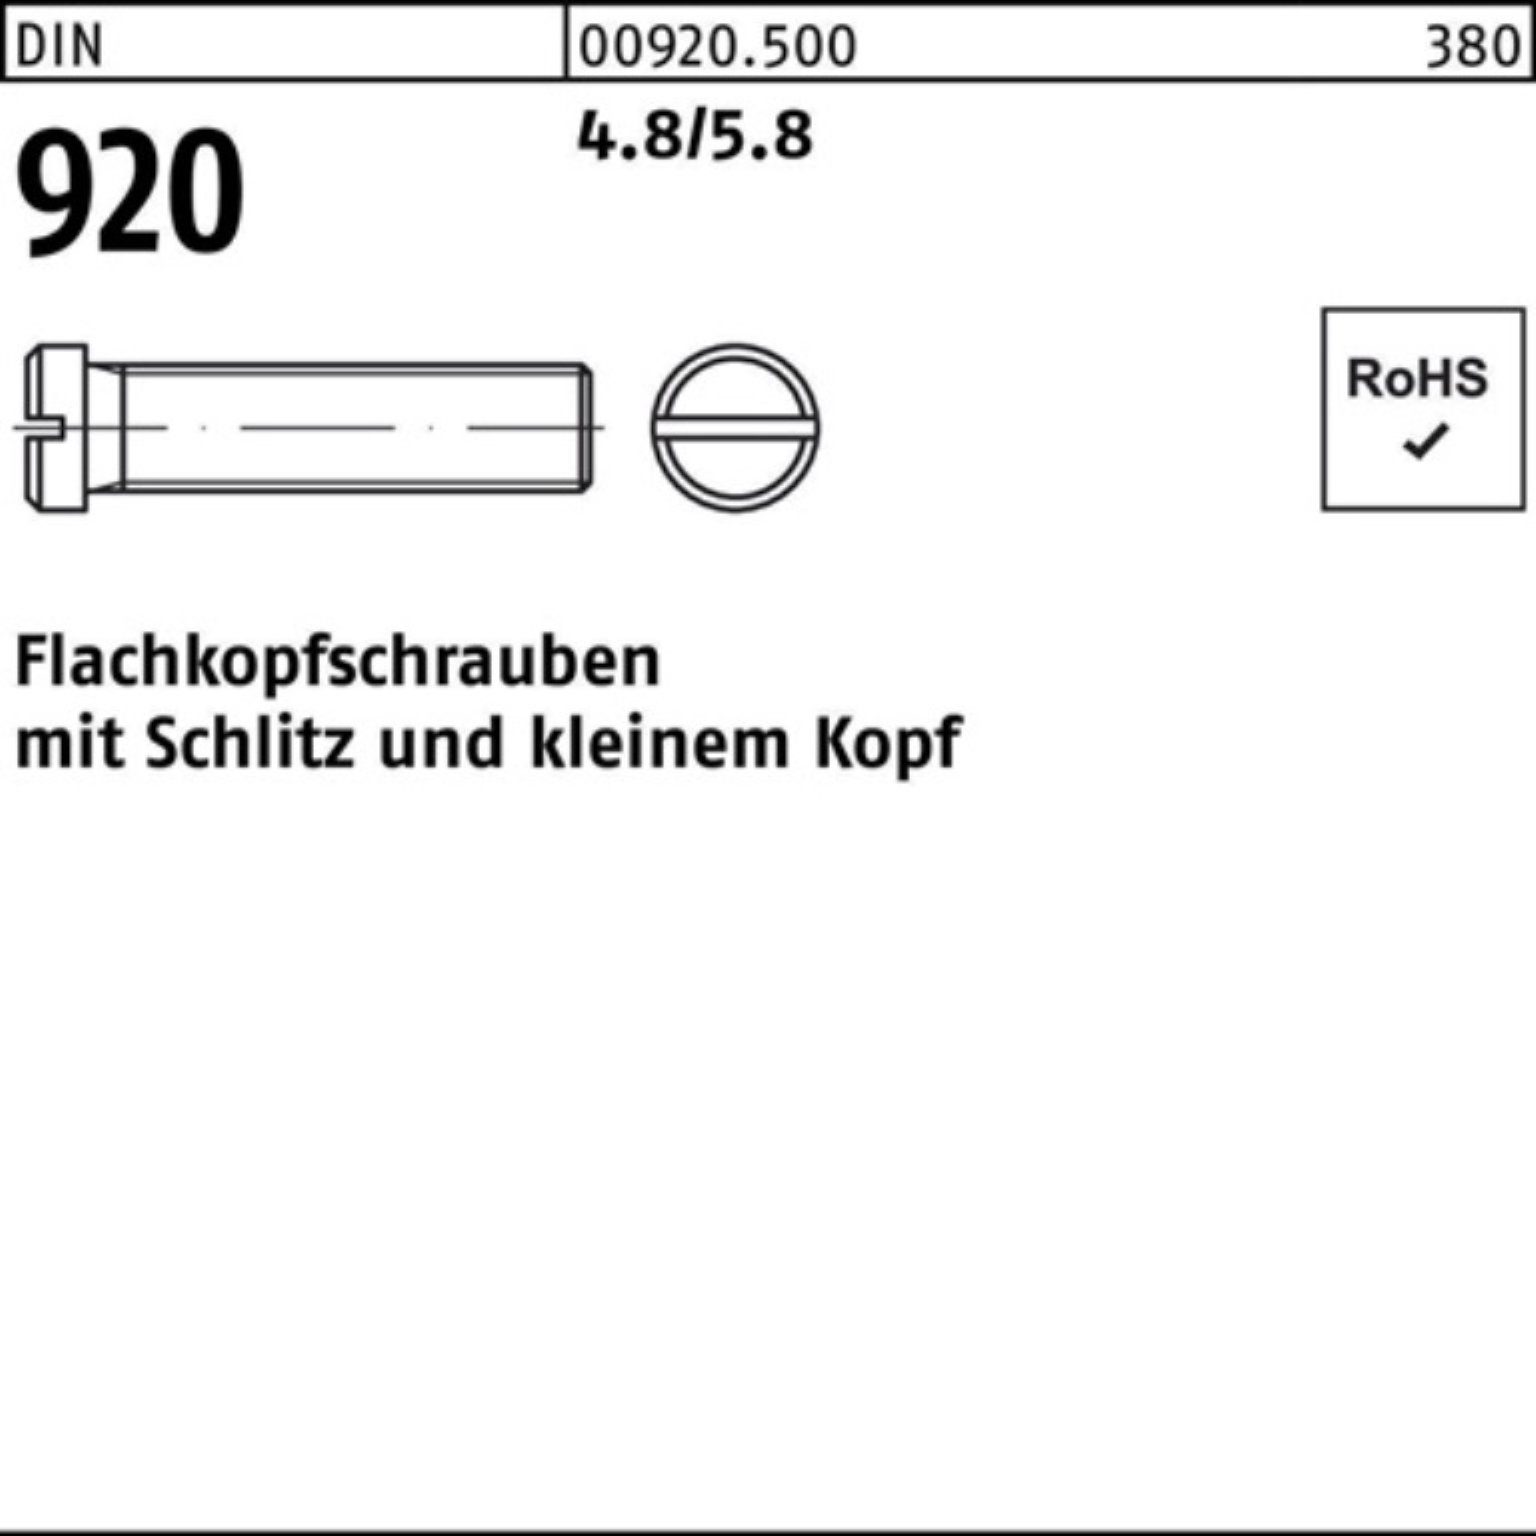 M5x Stück Schraube DIN Reyher 100er 4.8/5.8 920 8 Flachkopfschraube 100 Schlitz Pack